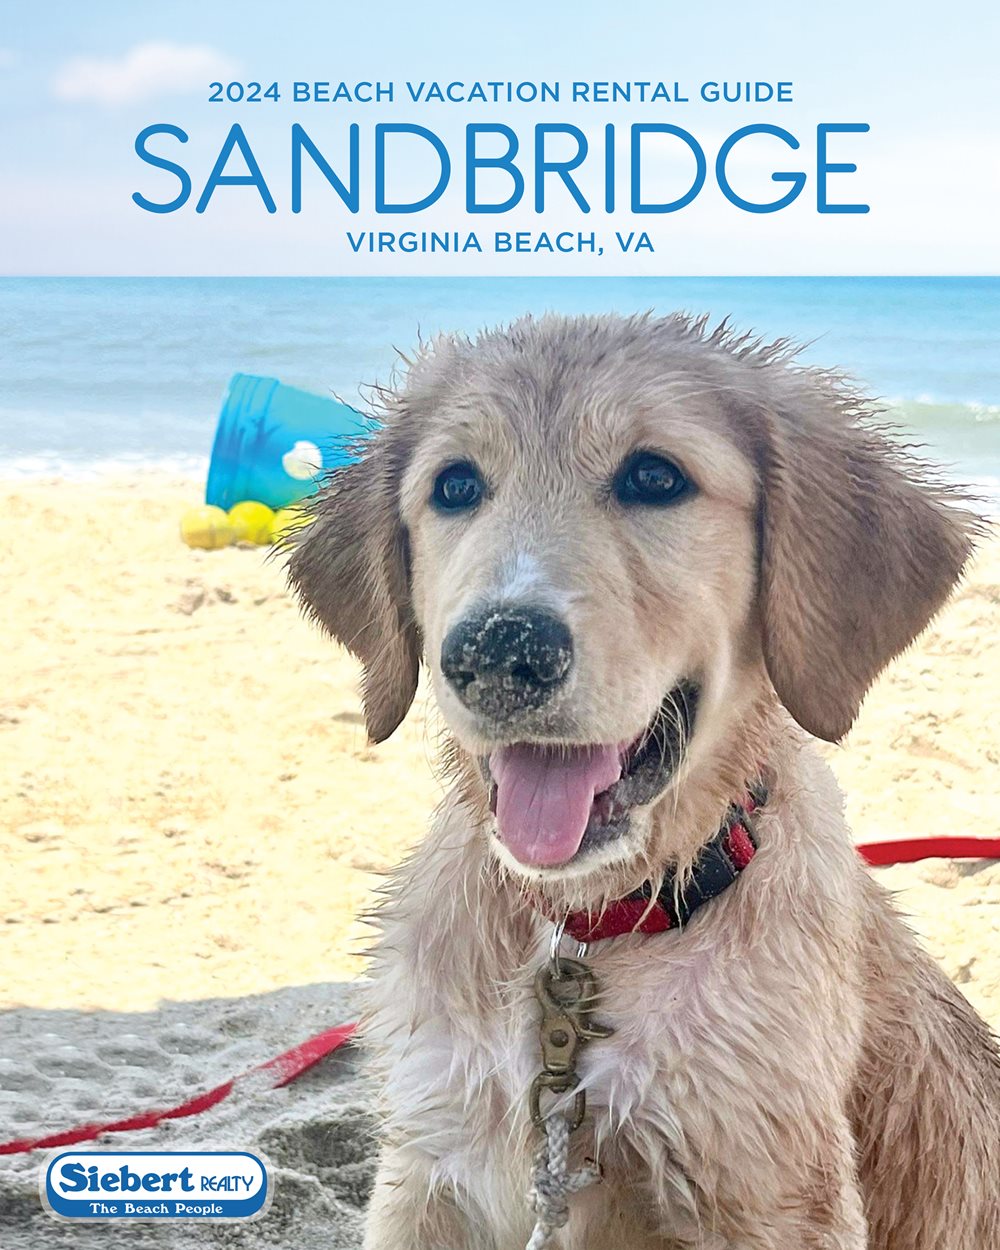 Sandbridge Beach Brochure